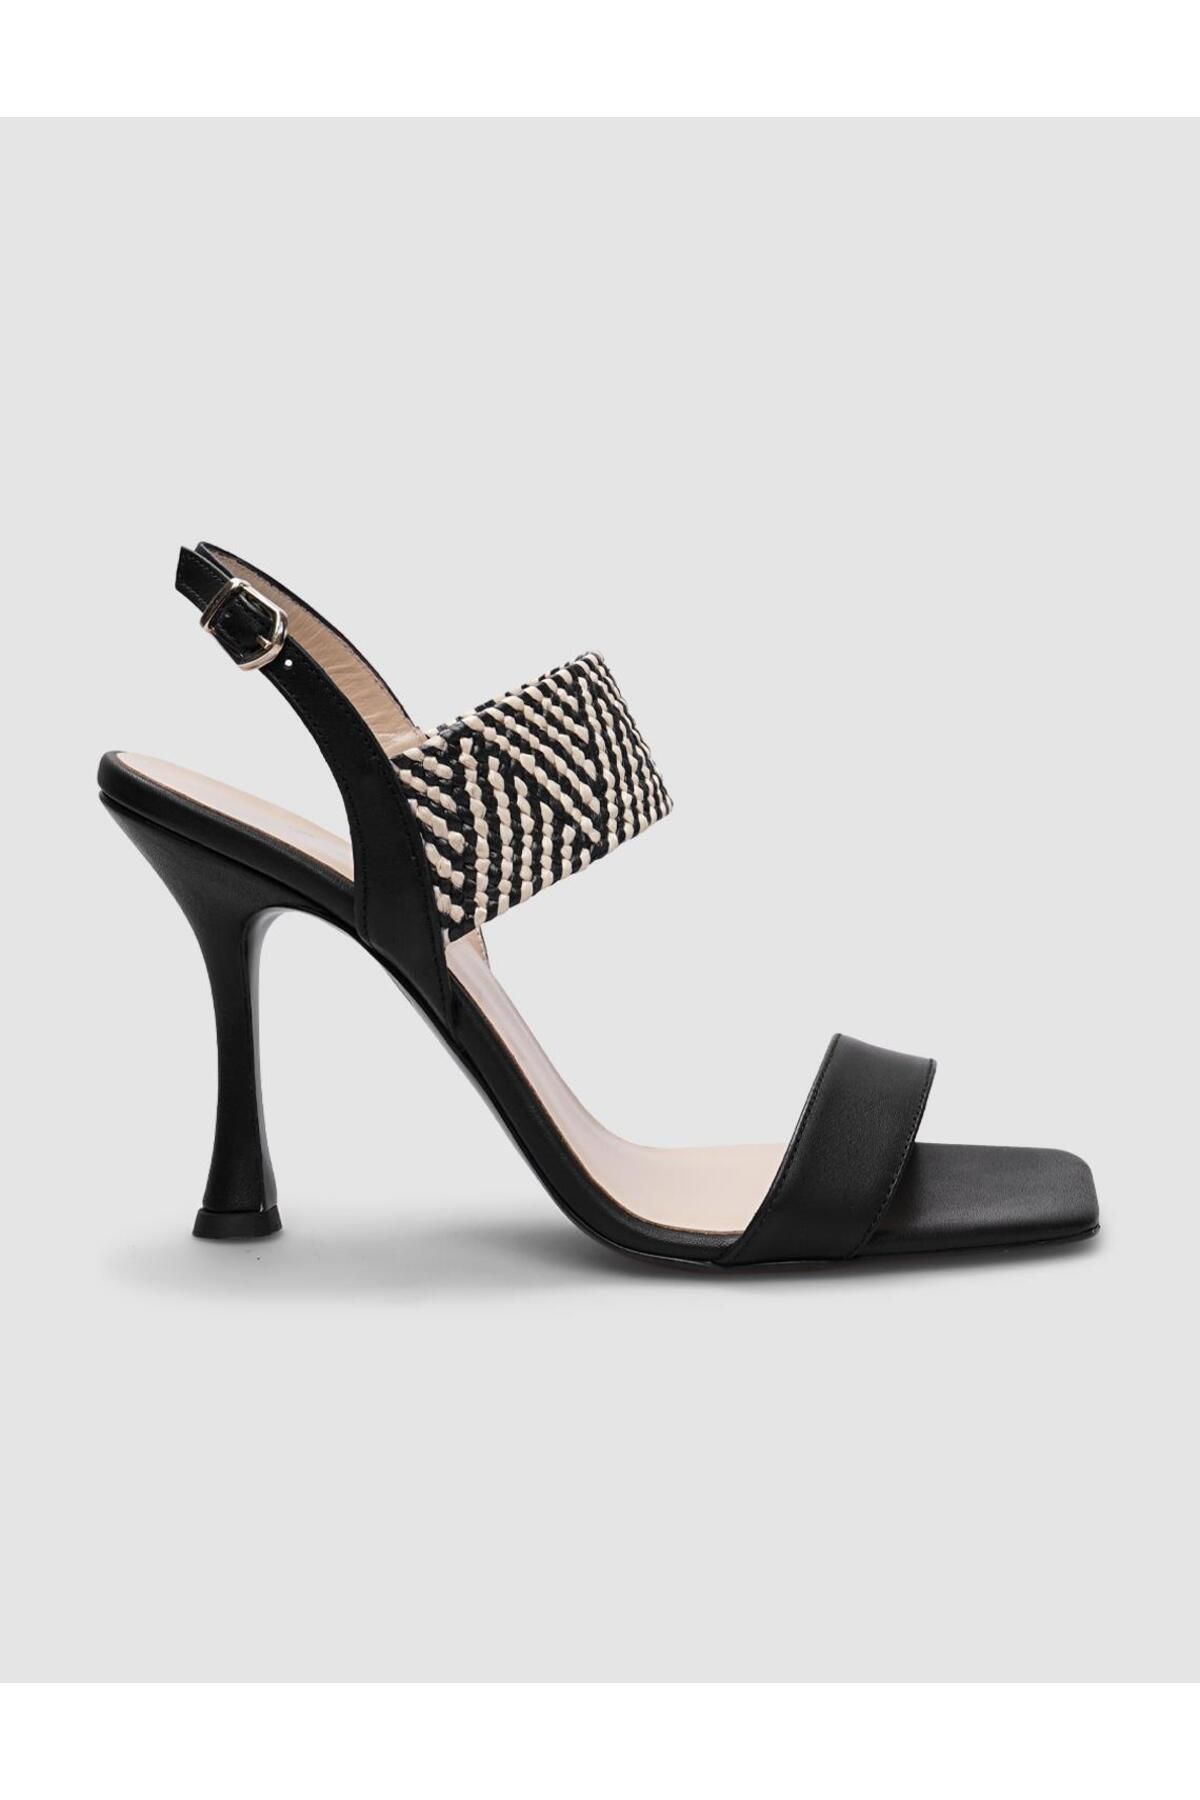 Cabani %100 Hakiki Deri Siyah Ekose Desenli Kadın Topuklu Ayakkabı